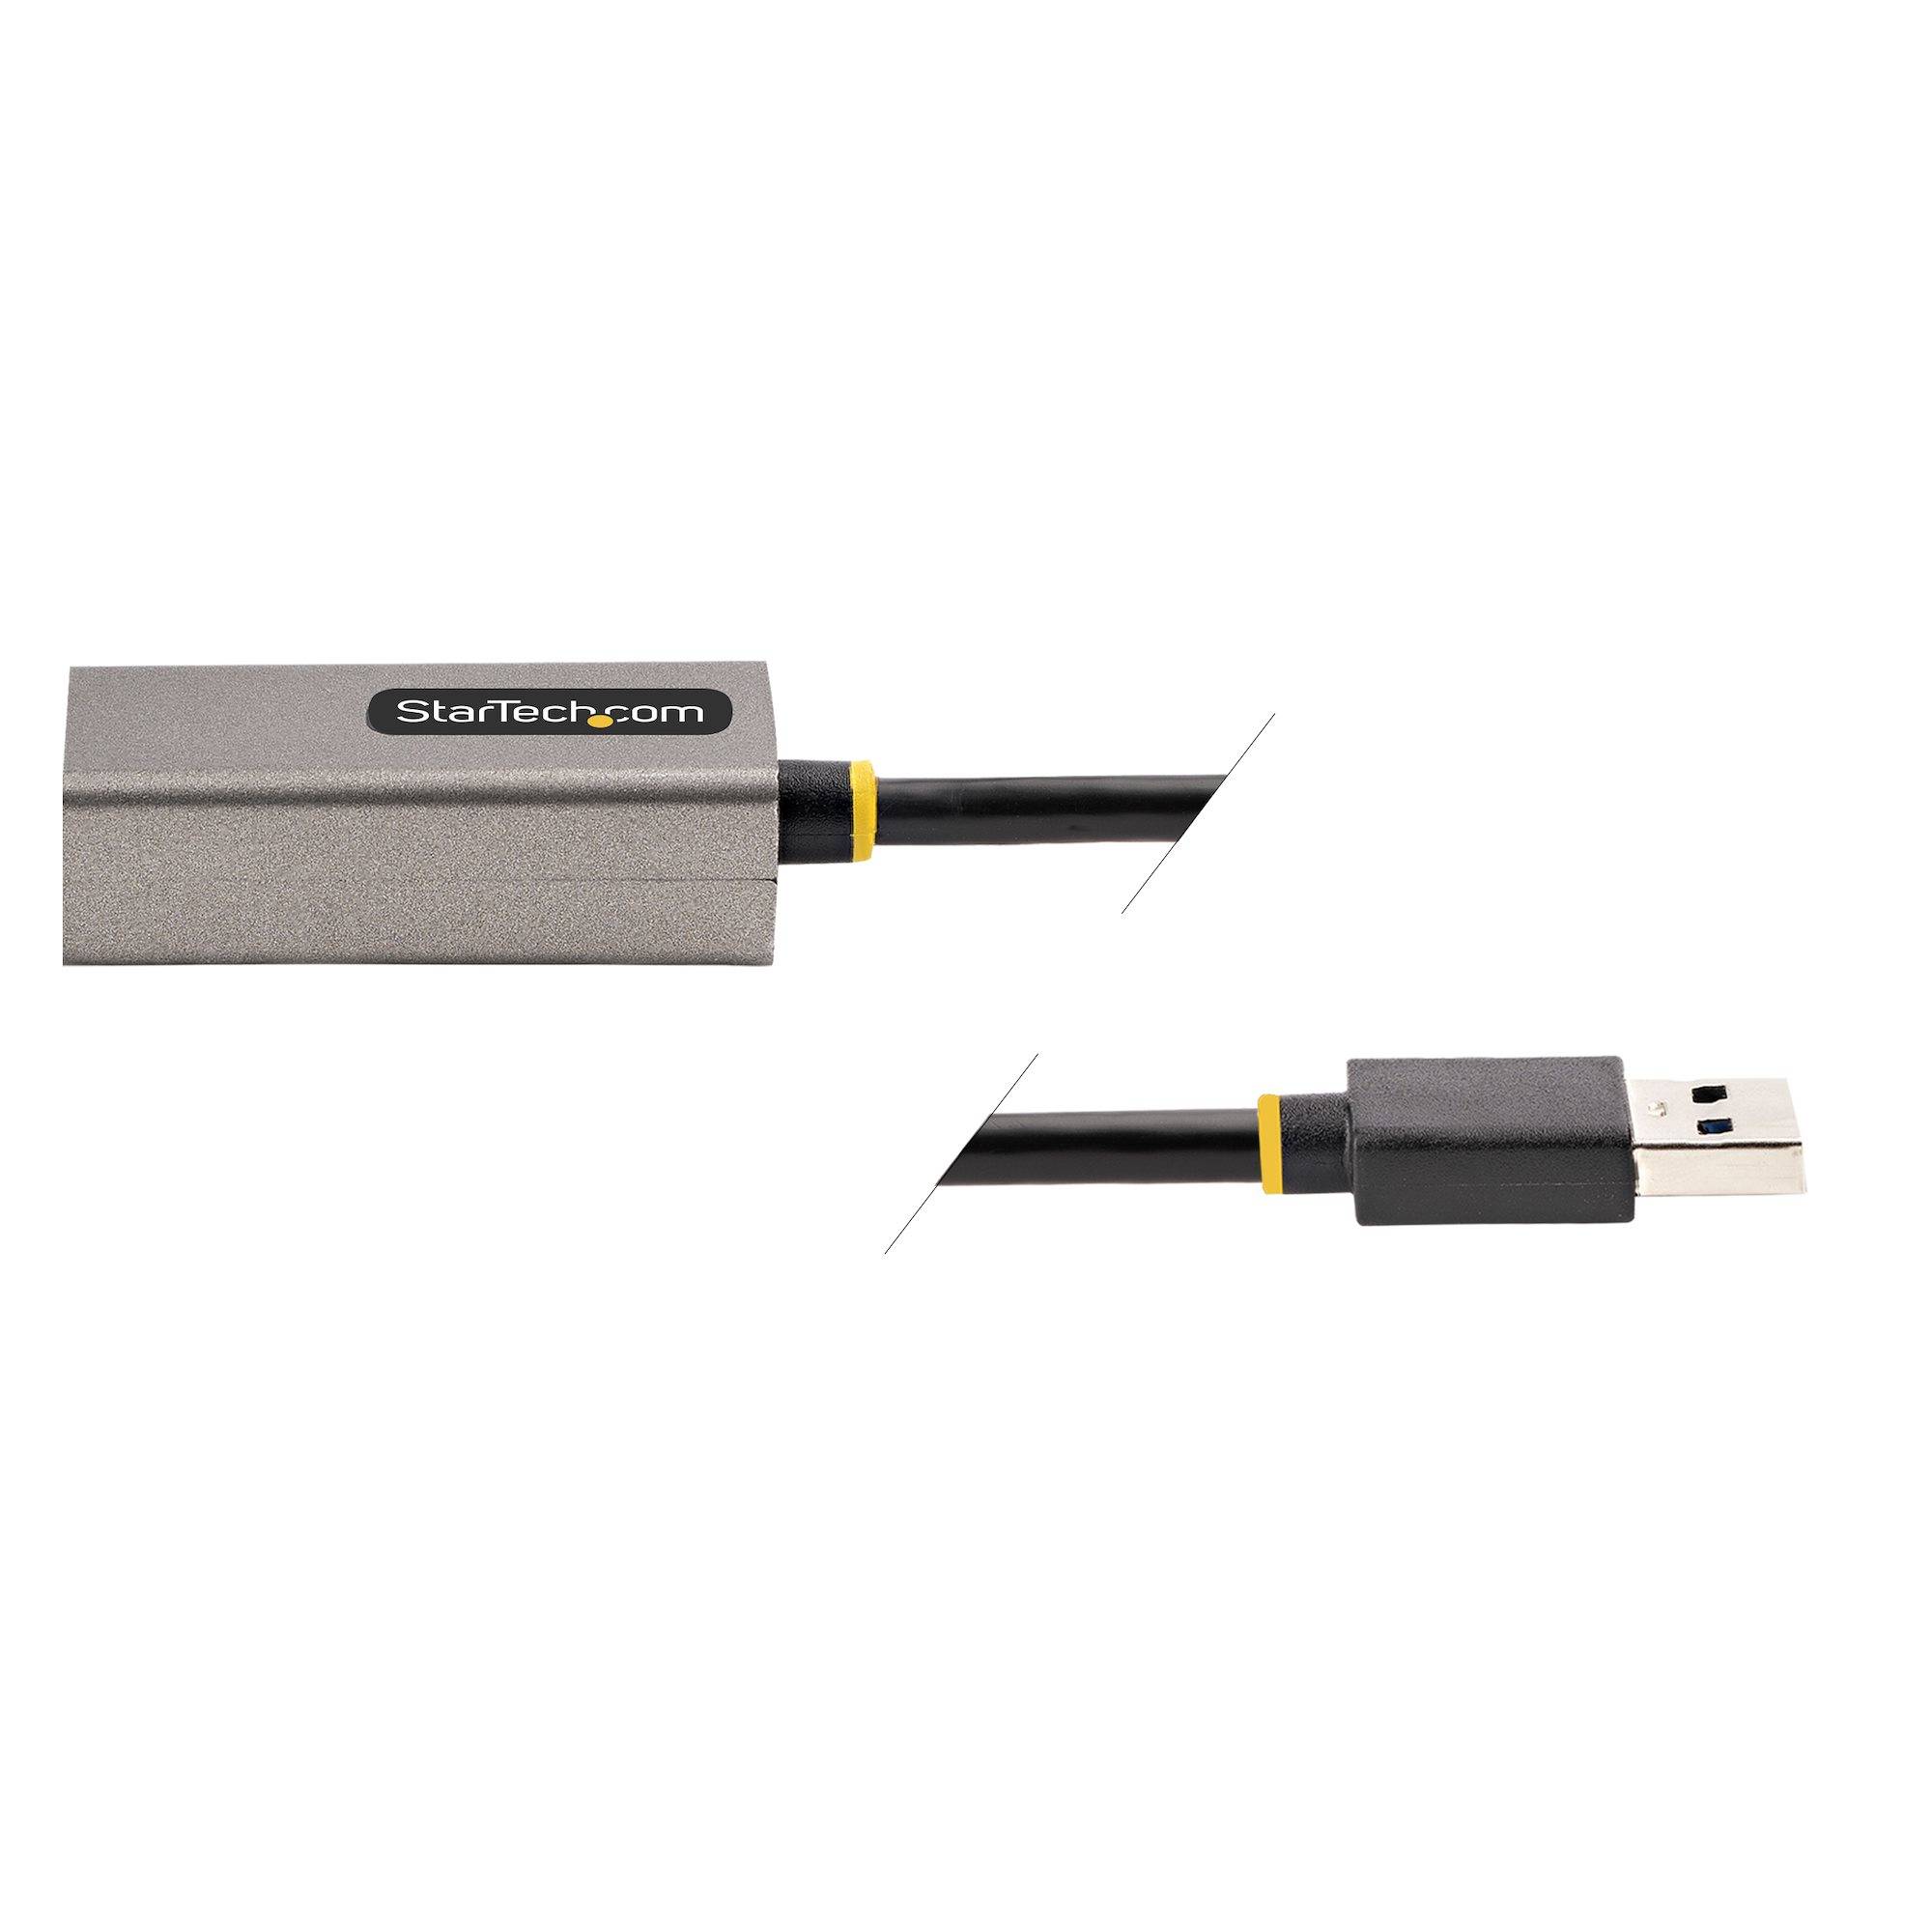 Rca Informatique - image du produit : ADAPTATEUR ETHERNET USB 3.0 10/100/1000 GIGABIT ETHERNET